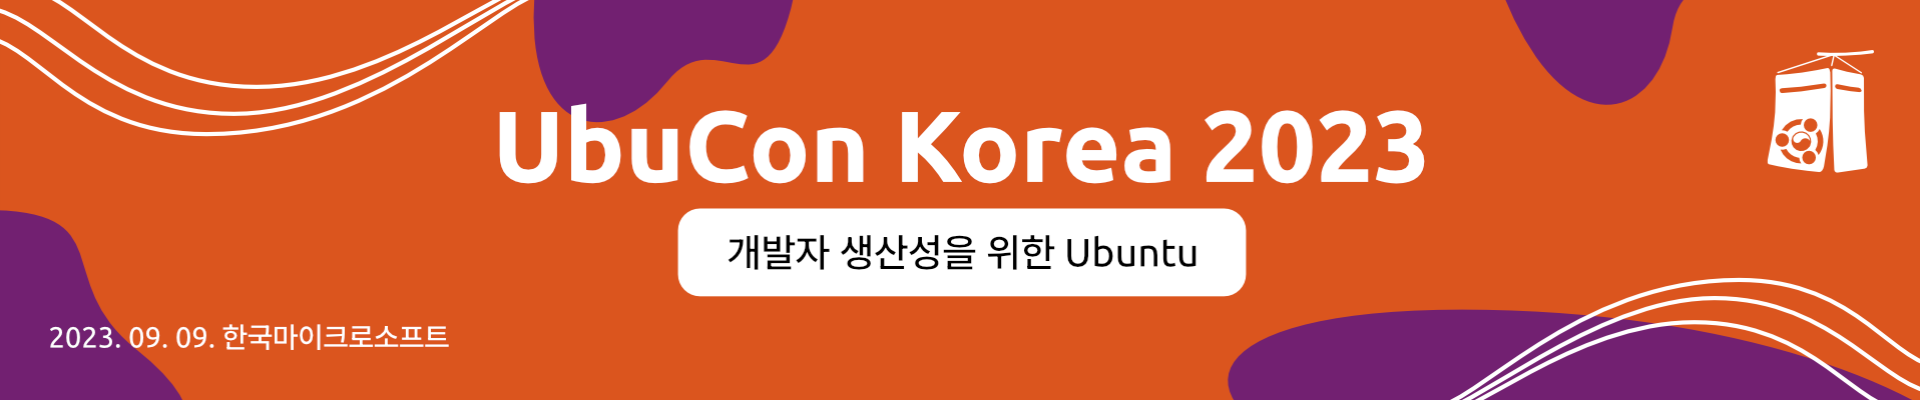 UbuCon Korea 2023